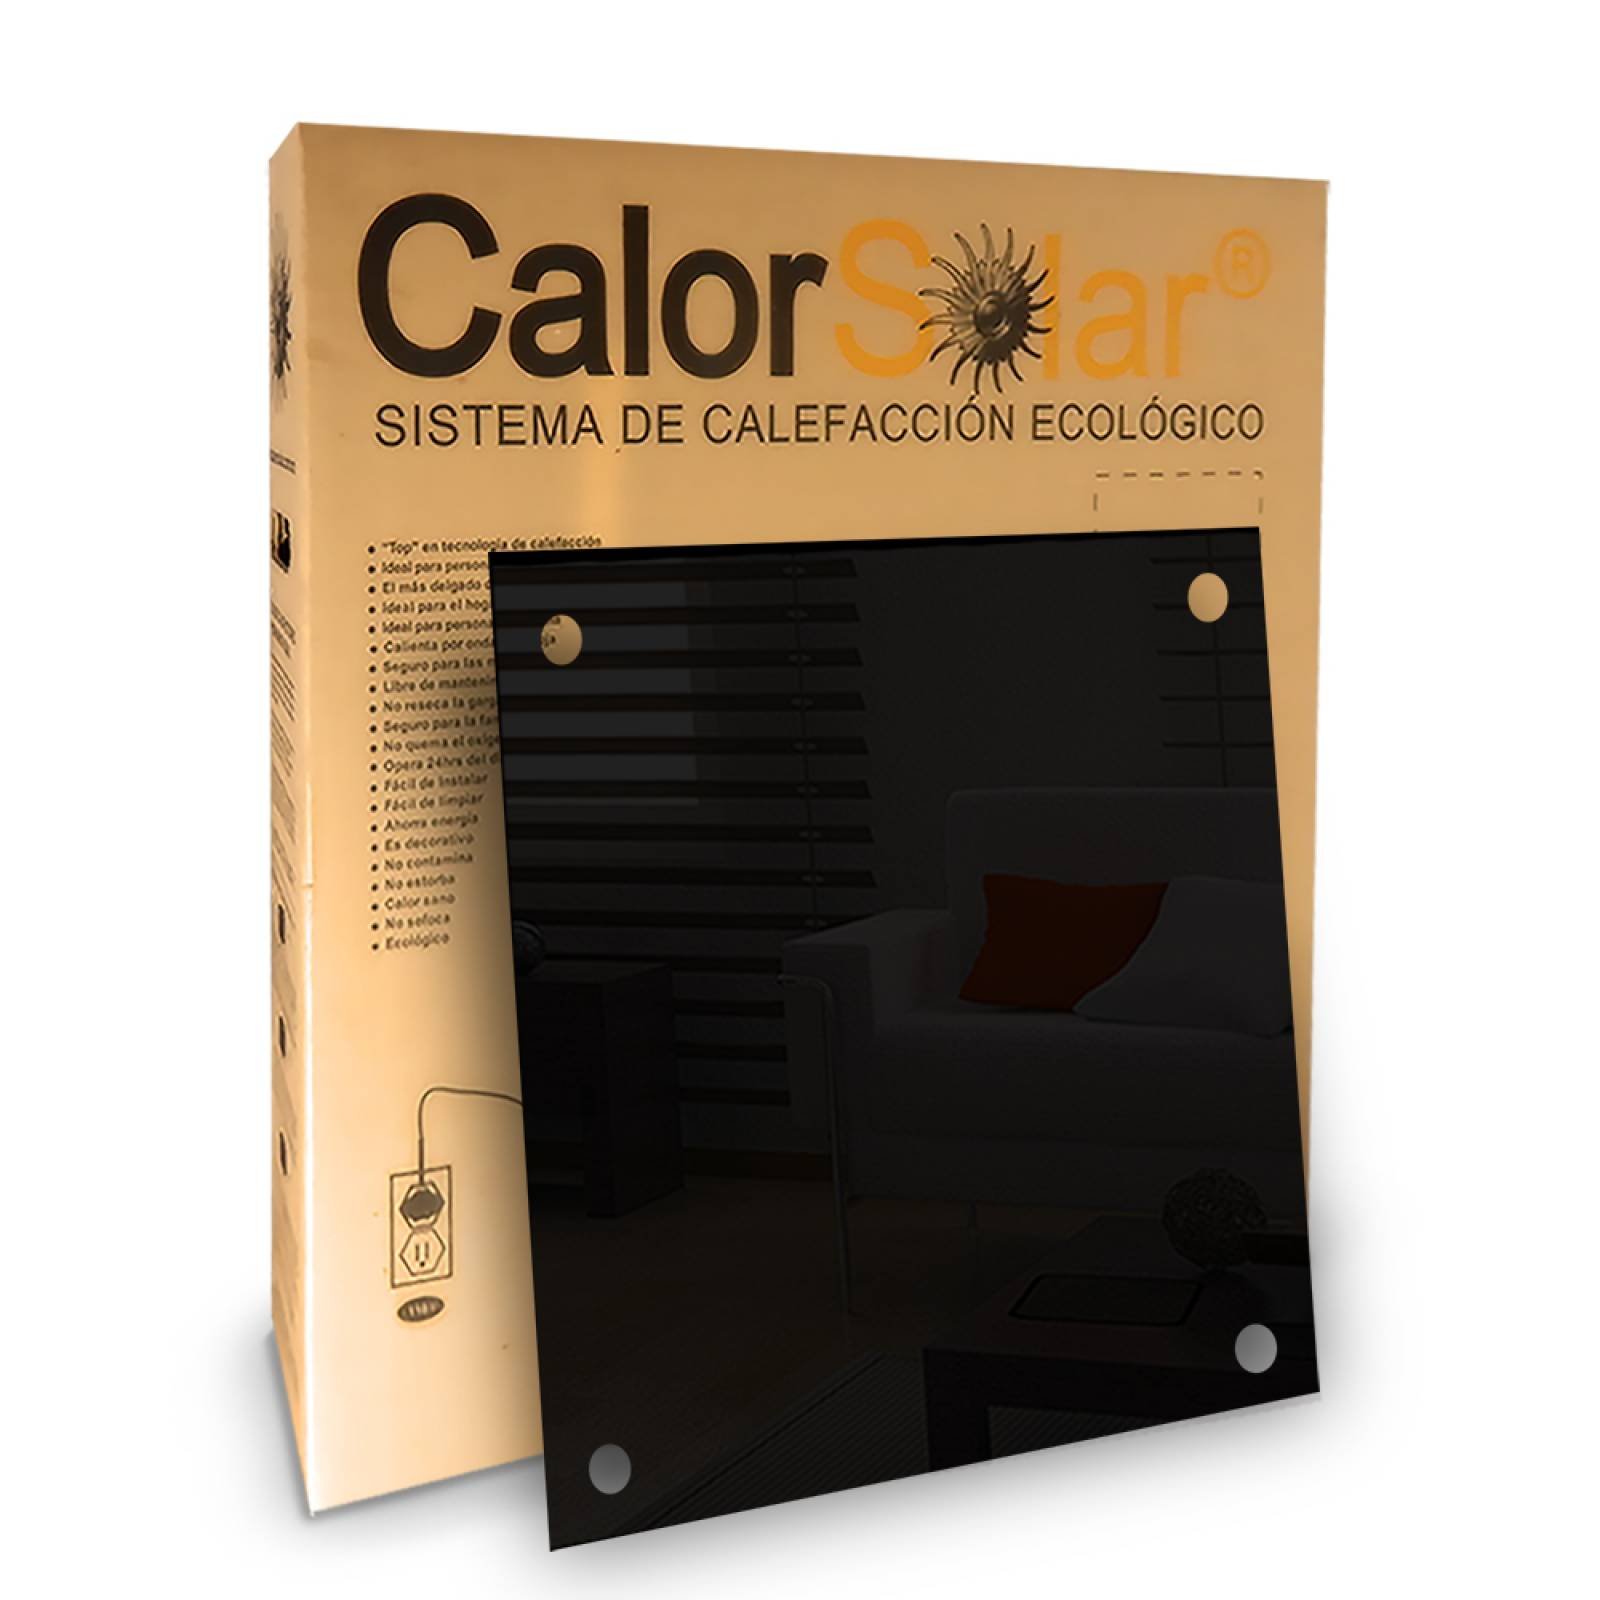 Calefactor de Panel infrarrojo en Cristal para Techo, Arizona Wave Black Star de 380W 60x60cm, Mod: 342CaSol-TN